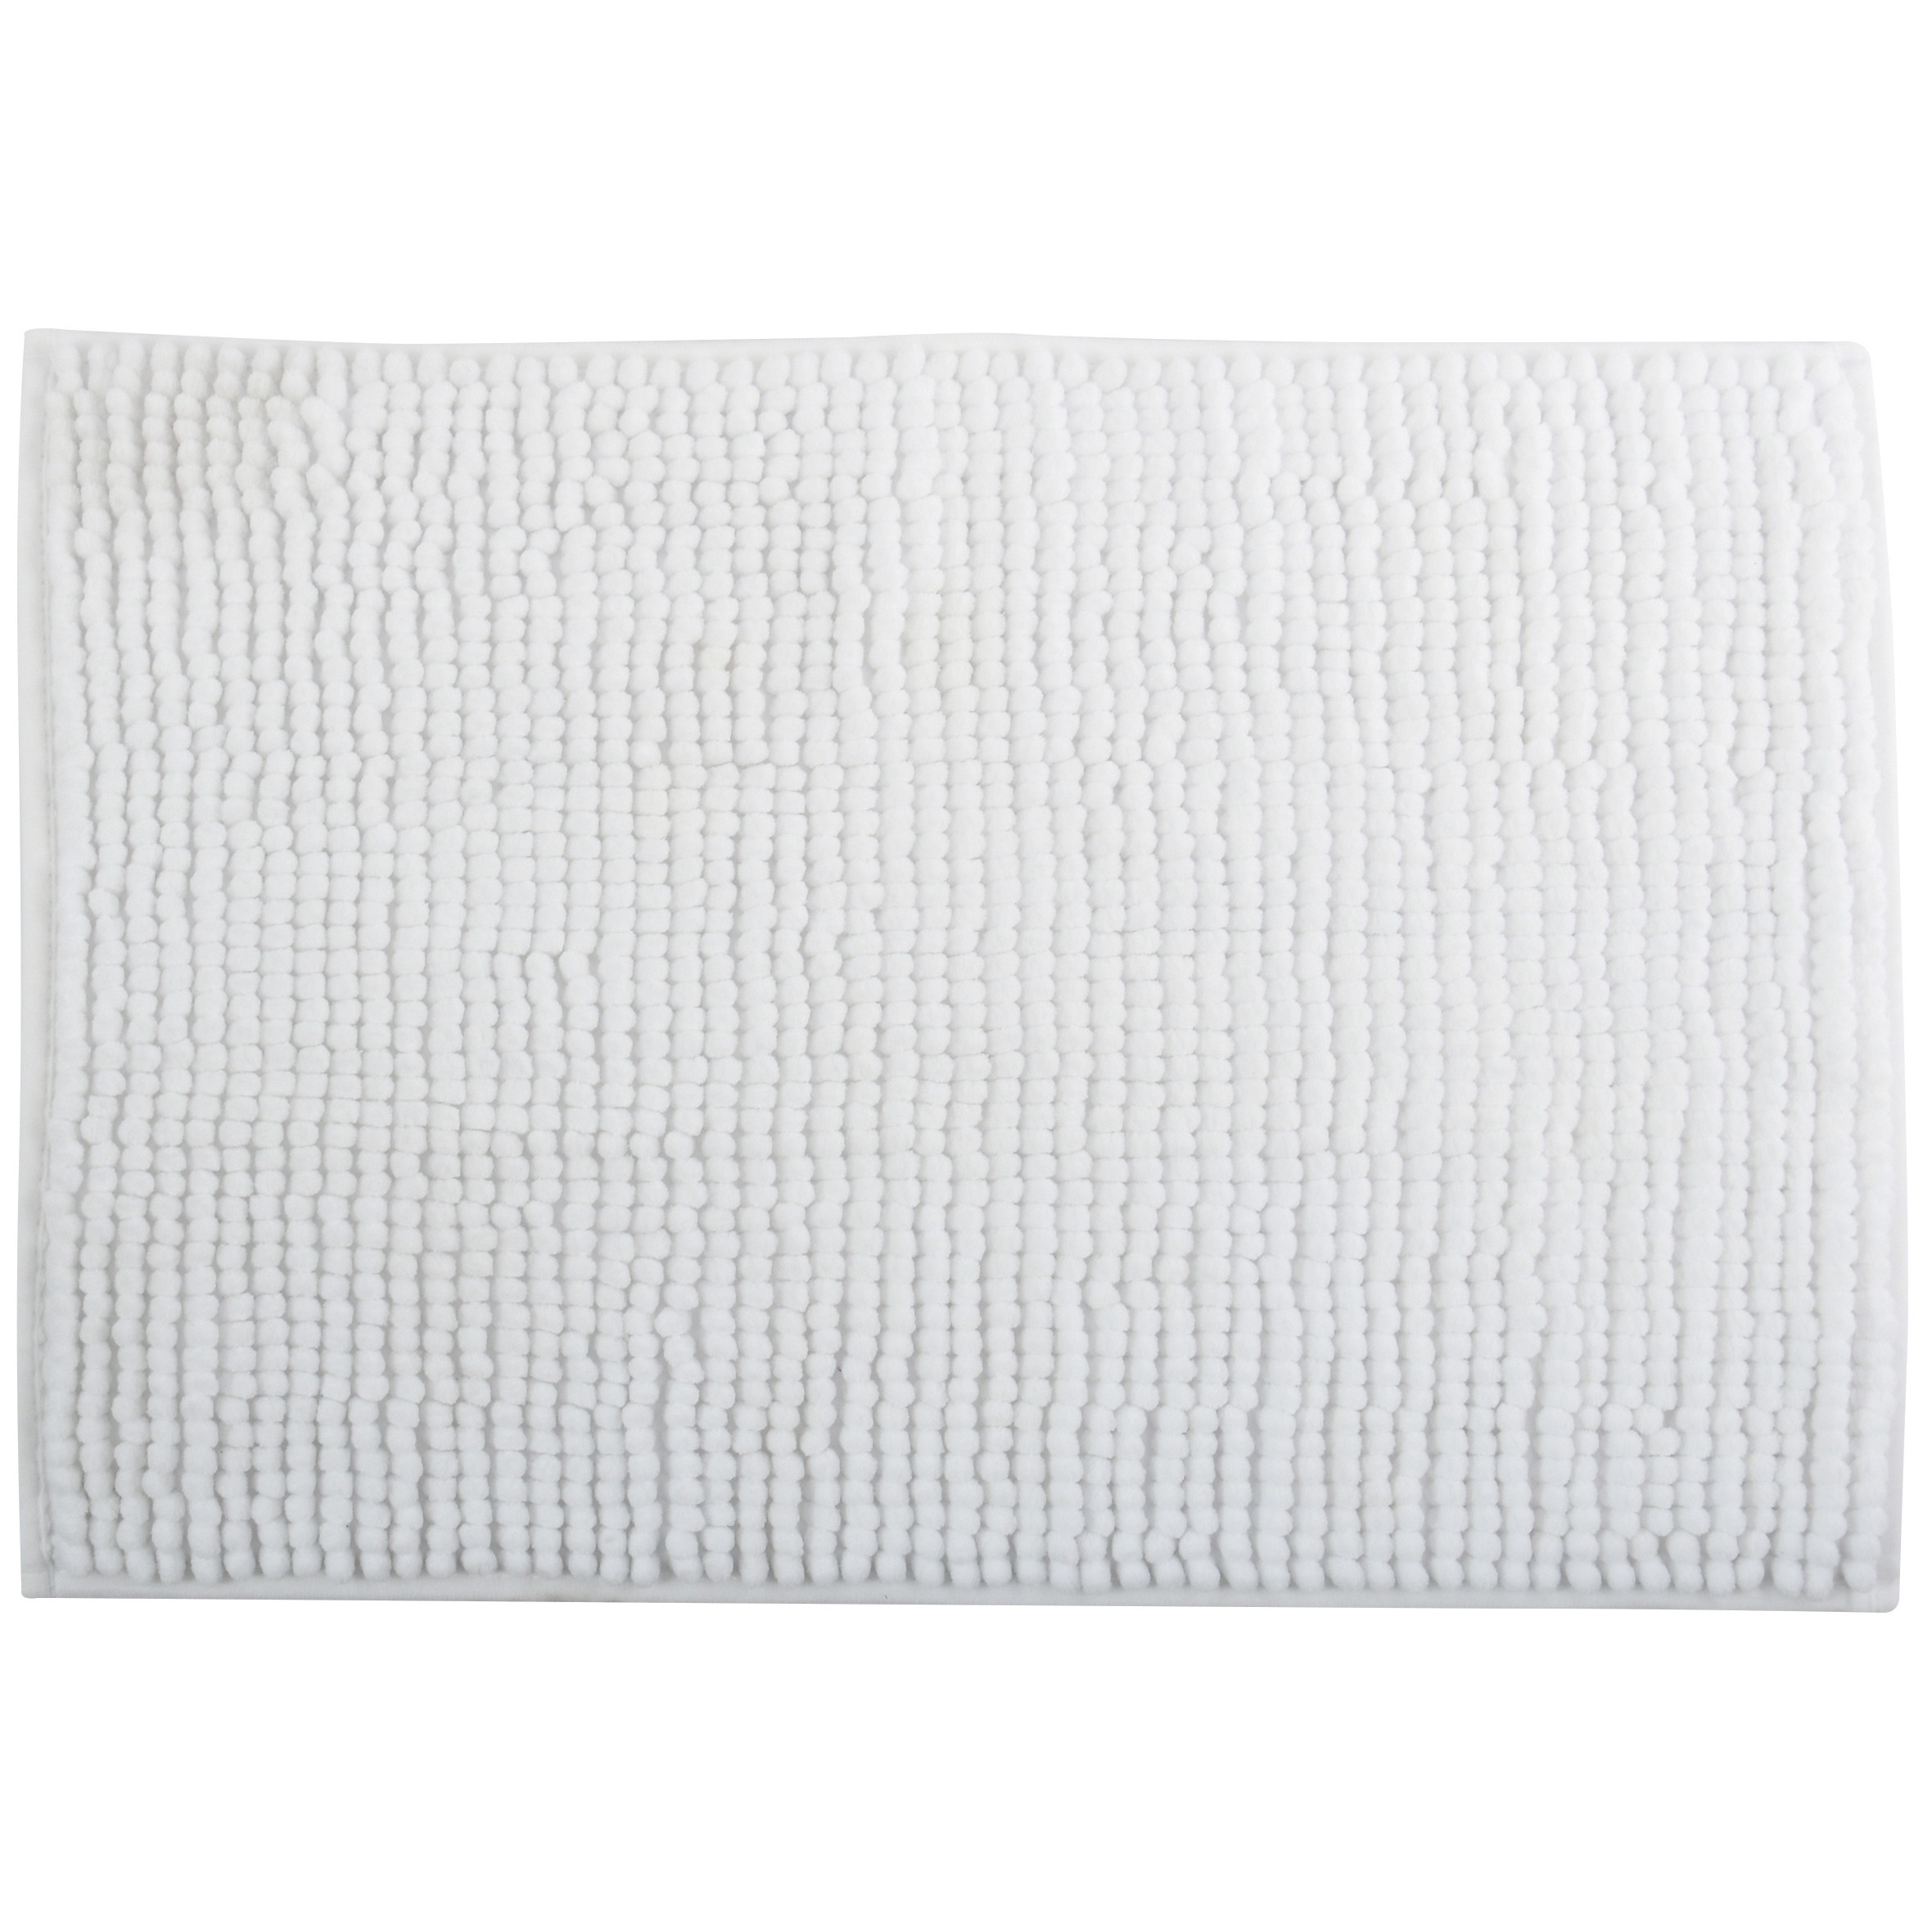 Badkamerkleedje-badmat tapijt voor op de vloer ivoor wit 60 x 90 cm